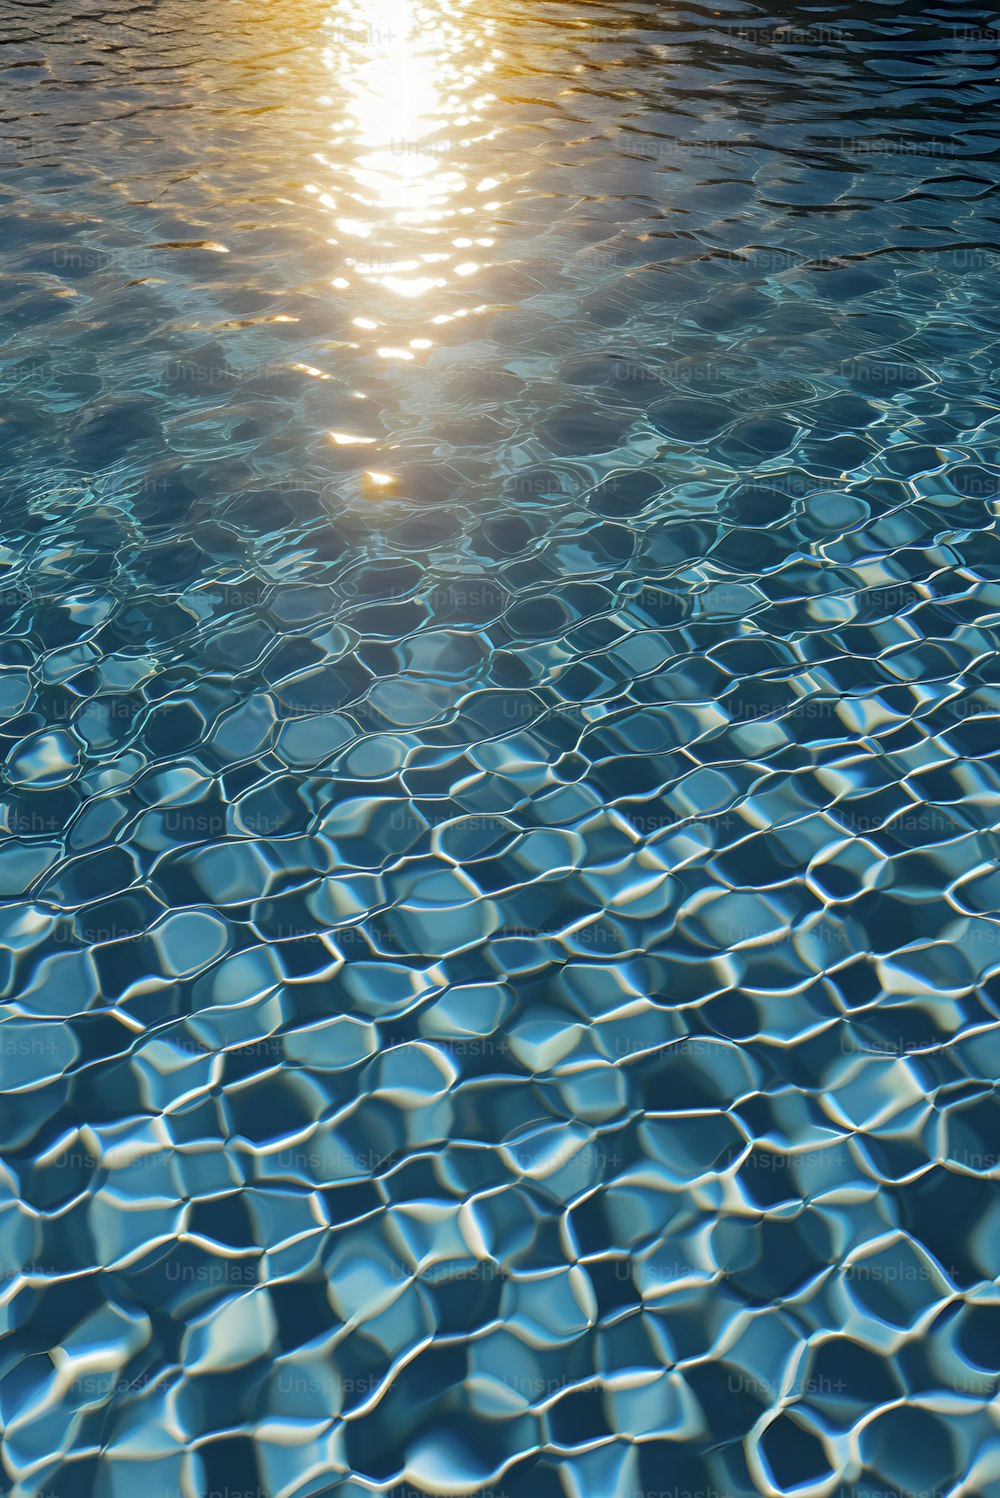 Il sole splende sull'acqua di una piscina